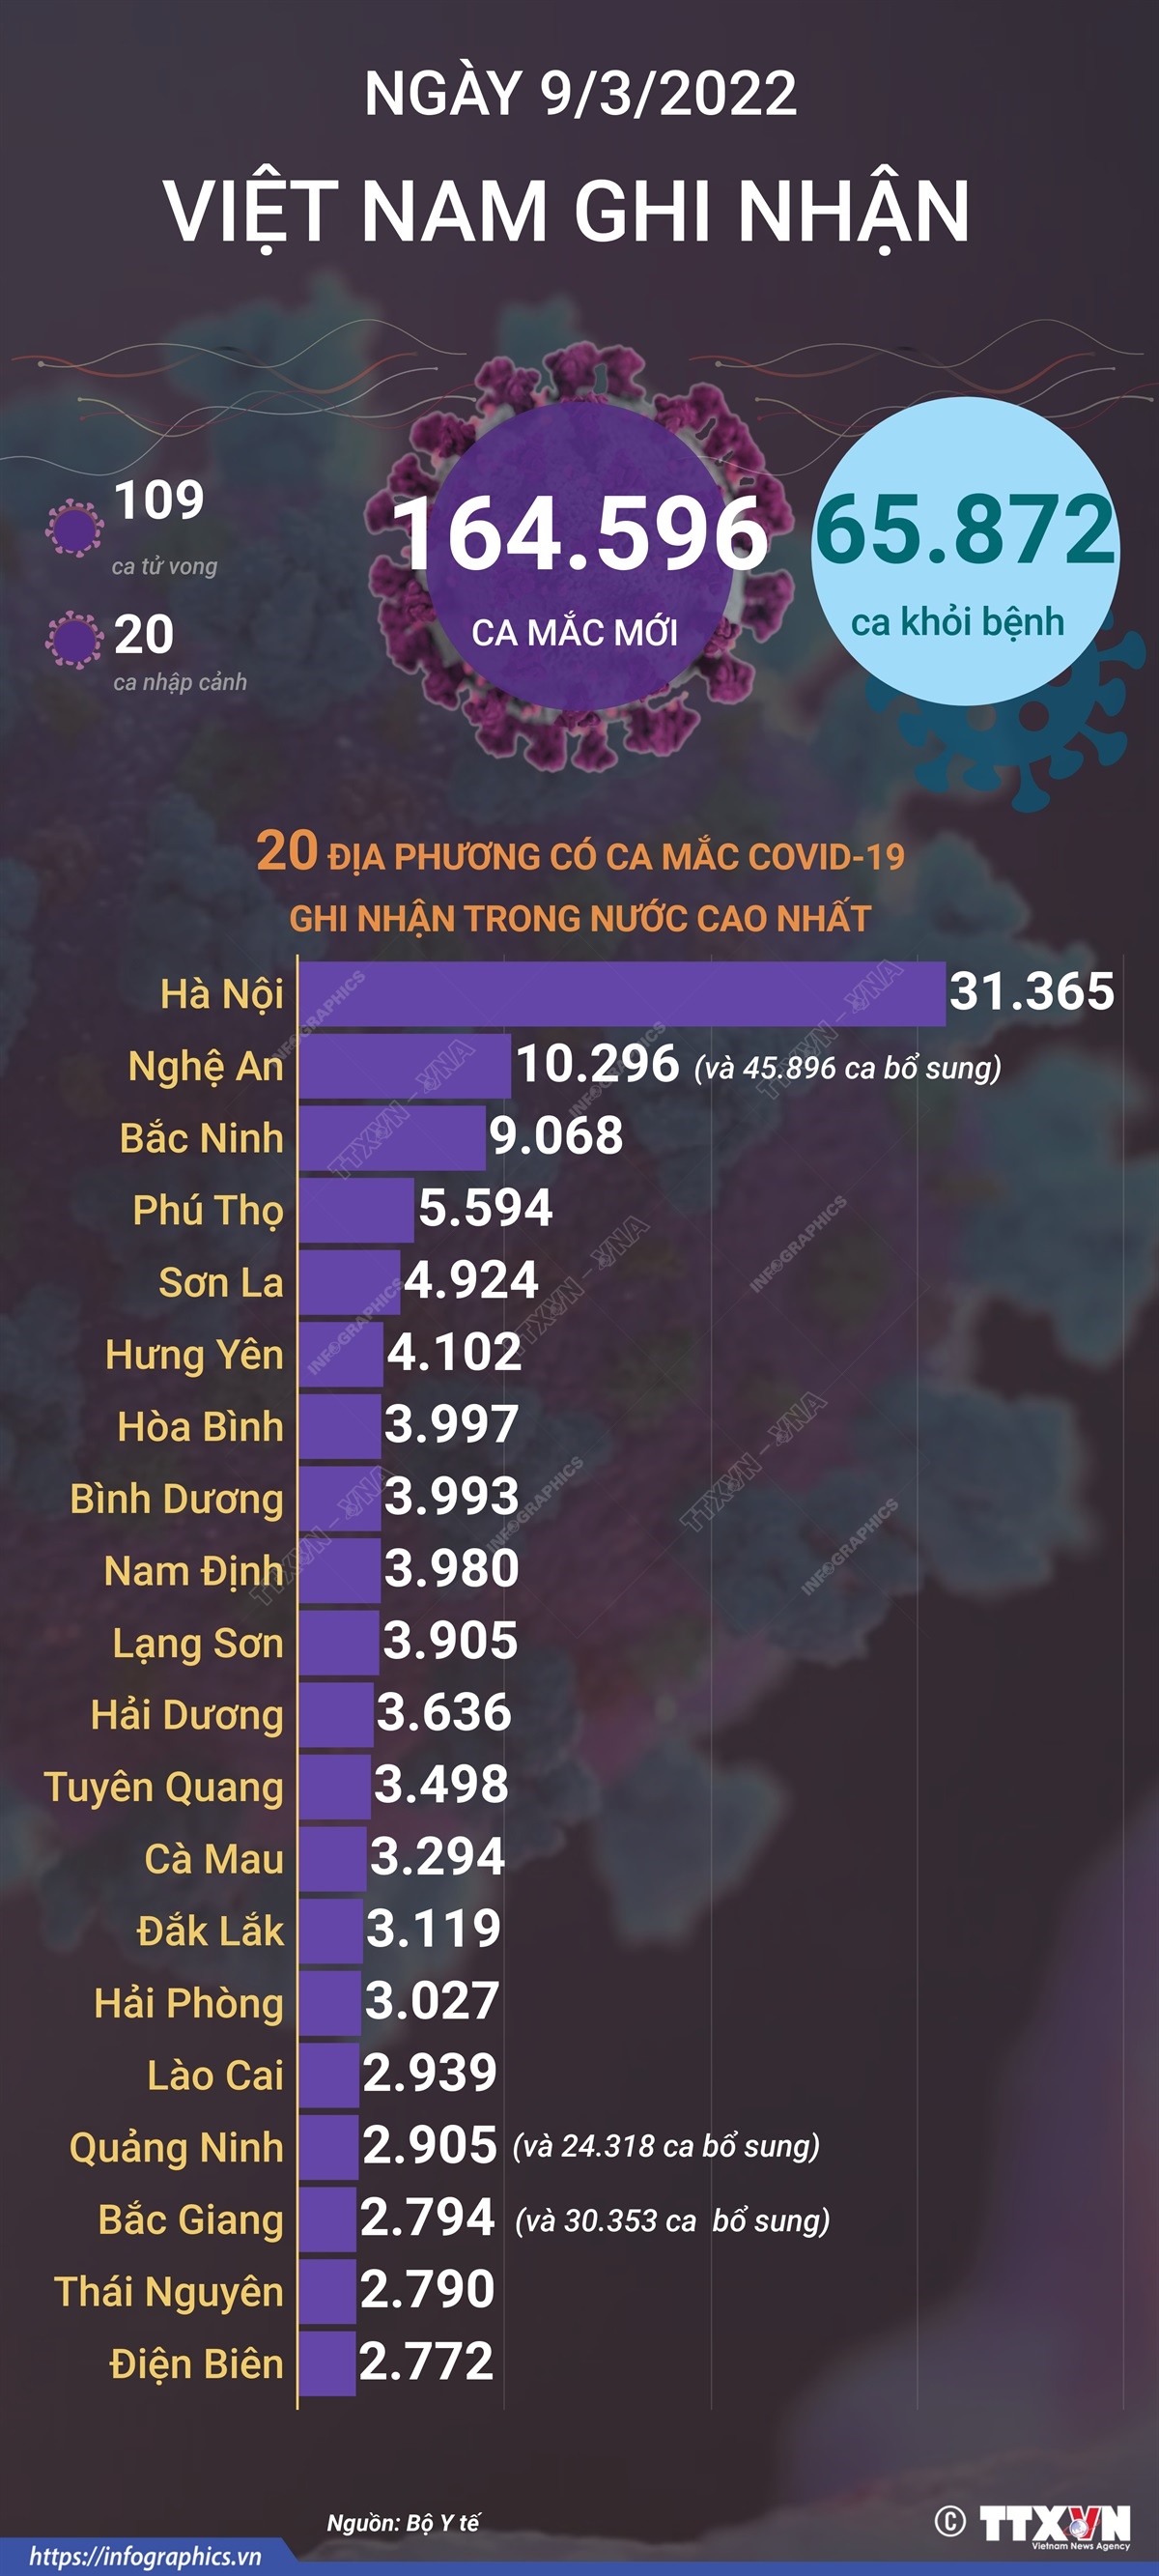 Ngày 9/3/2022, Việt Nam ghi nhận 164.596 ca mắc mới và 109 ca tử vong do COVID-19